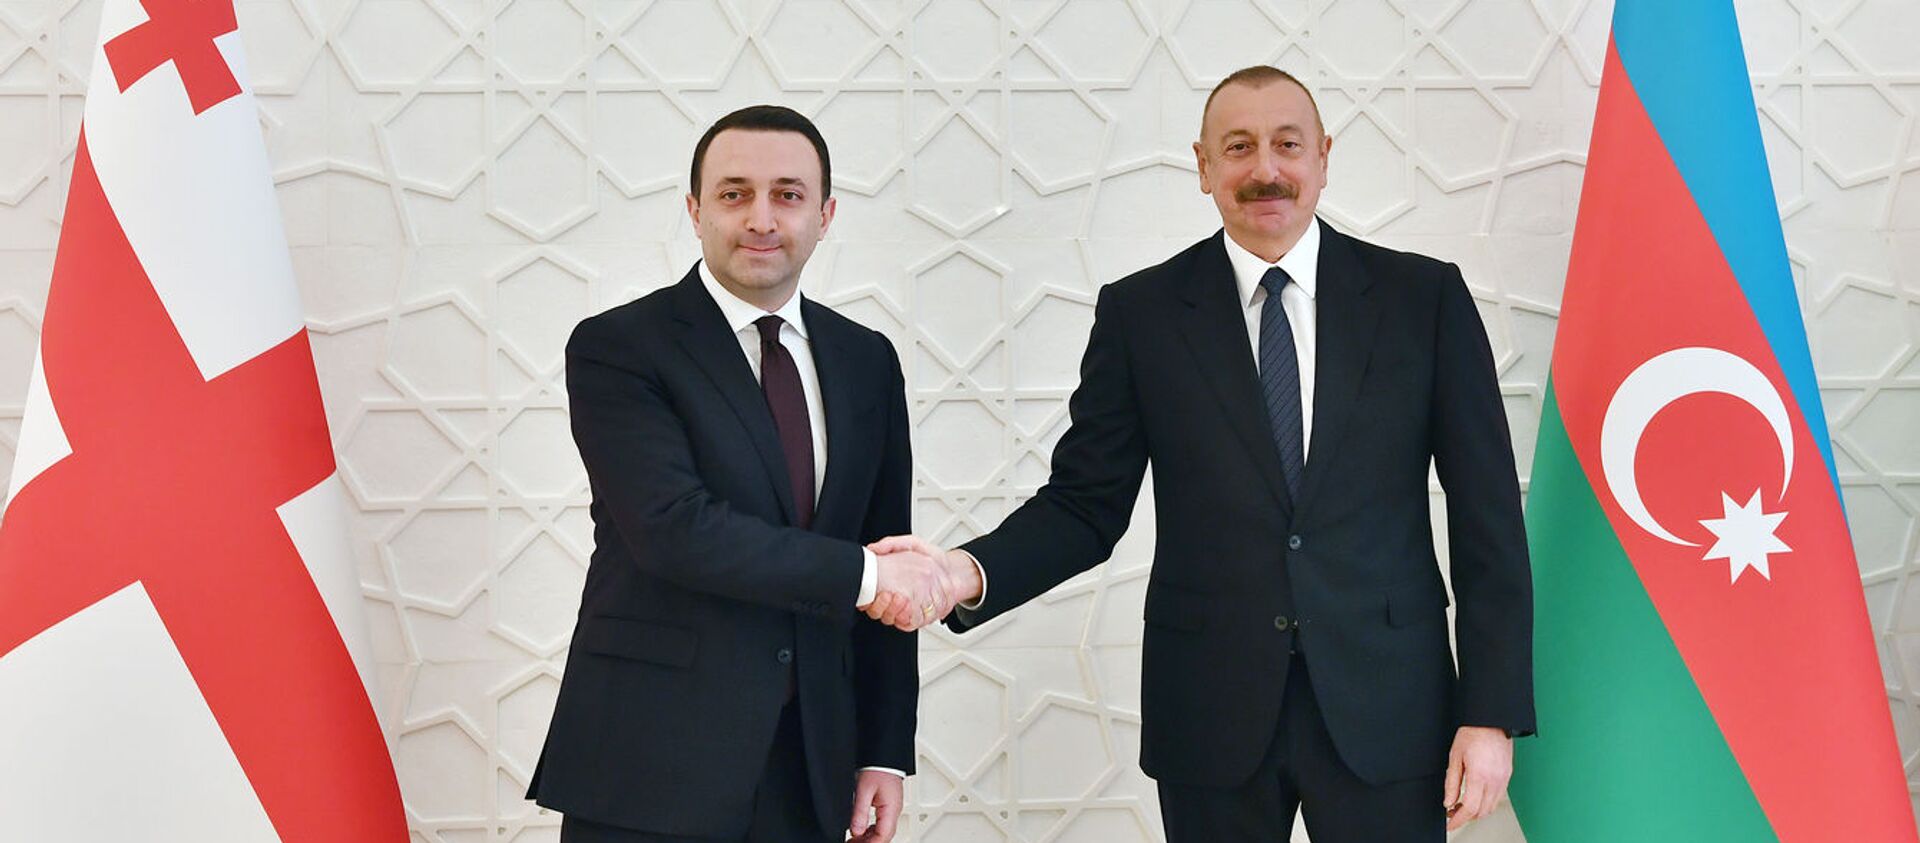 Встреча премьер-министра Грузии Ираклия Гарибашвили с президентом Азербайджана Ильхамом Алиевым - Sputnik Грузия, 1920, 05.05.2021